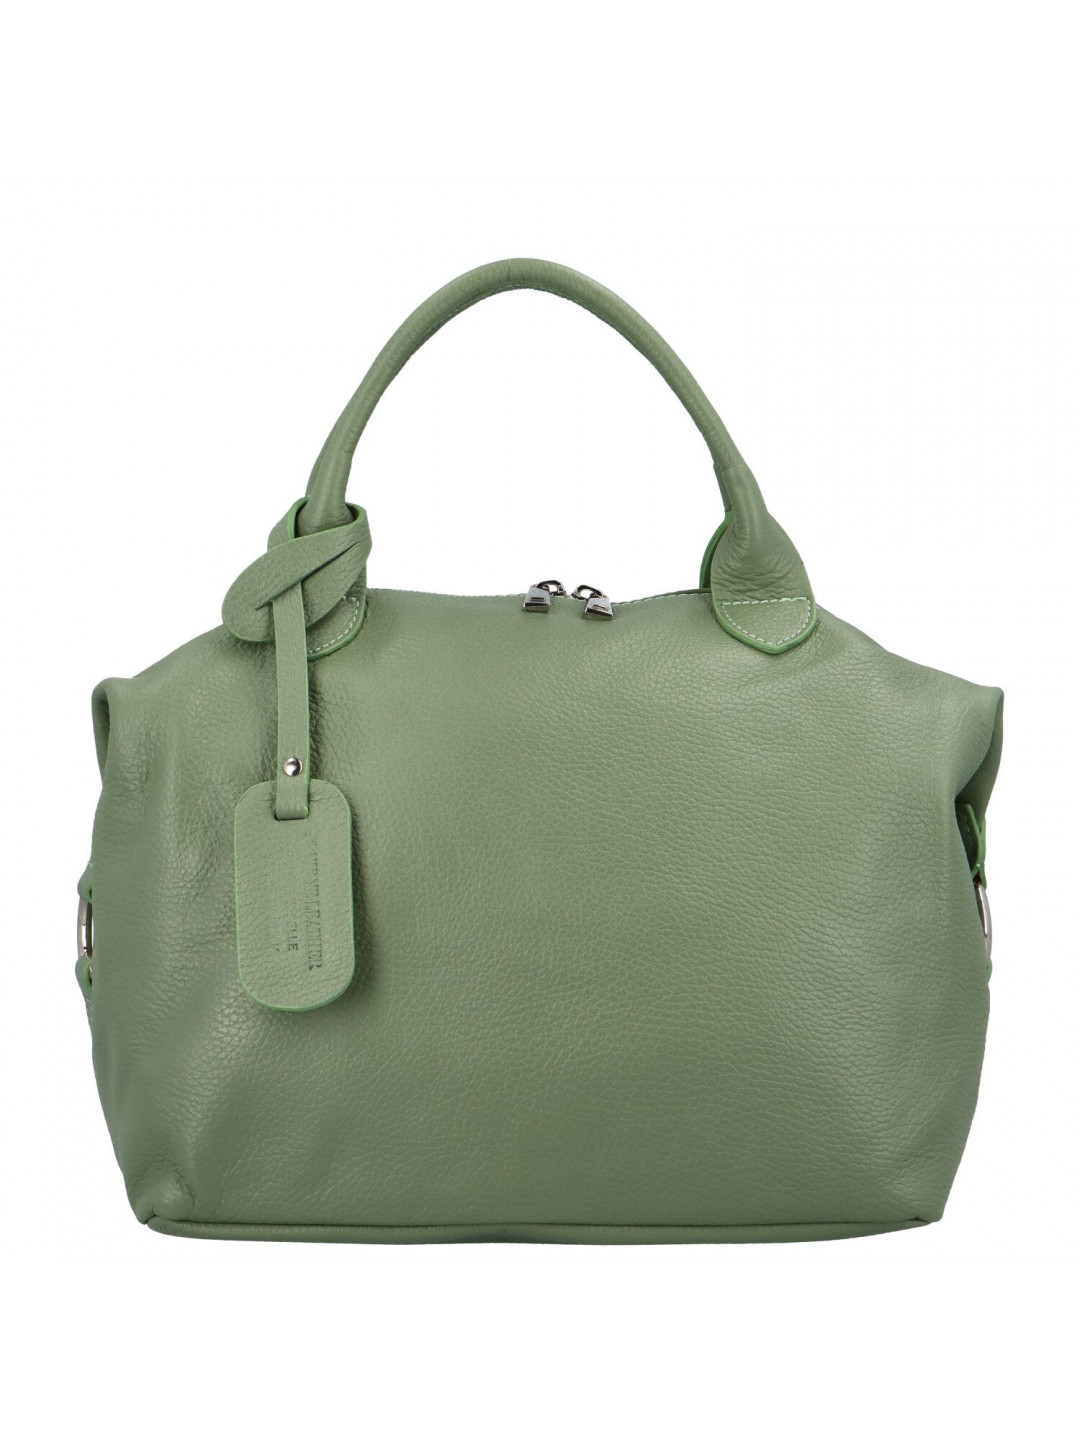 Dámská kožená kabelka do ruky zelená – Delami Lorelei